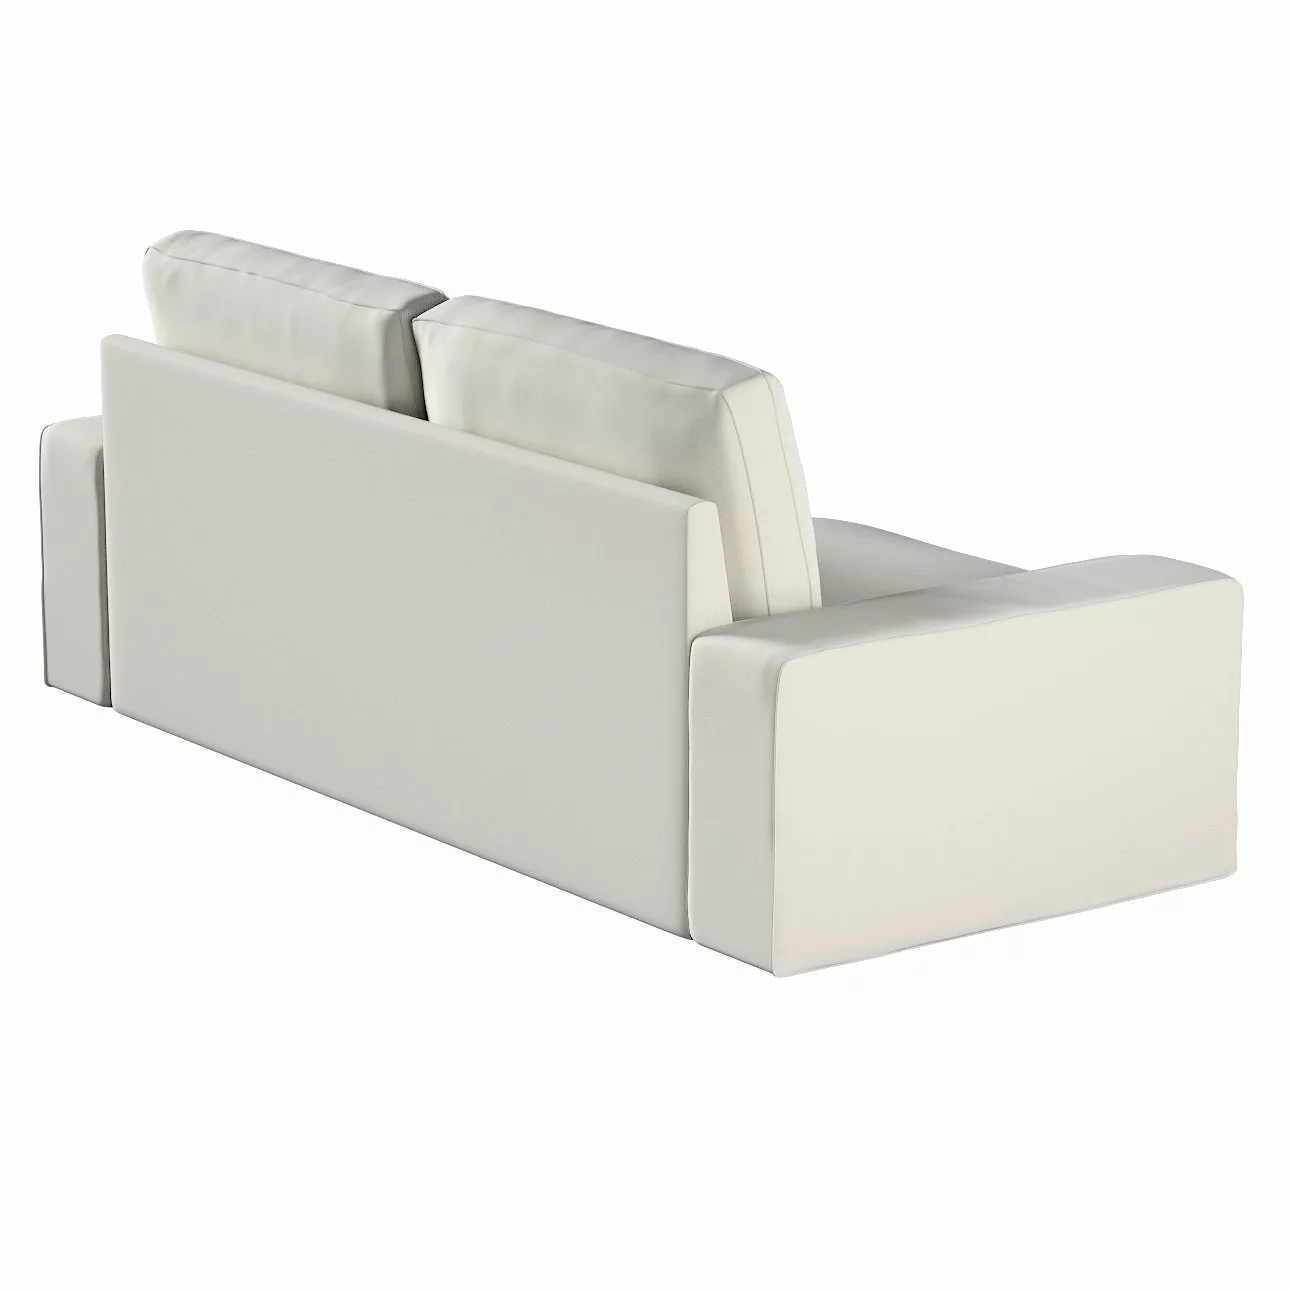 Bezug für Kivik 3-Sitzer Sofa, grau, Bezug für Sofa Kivik 3-Sitzer, Ingrid günstig online kaufen